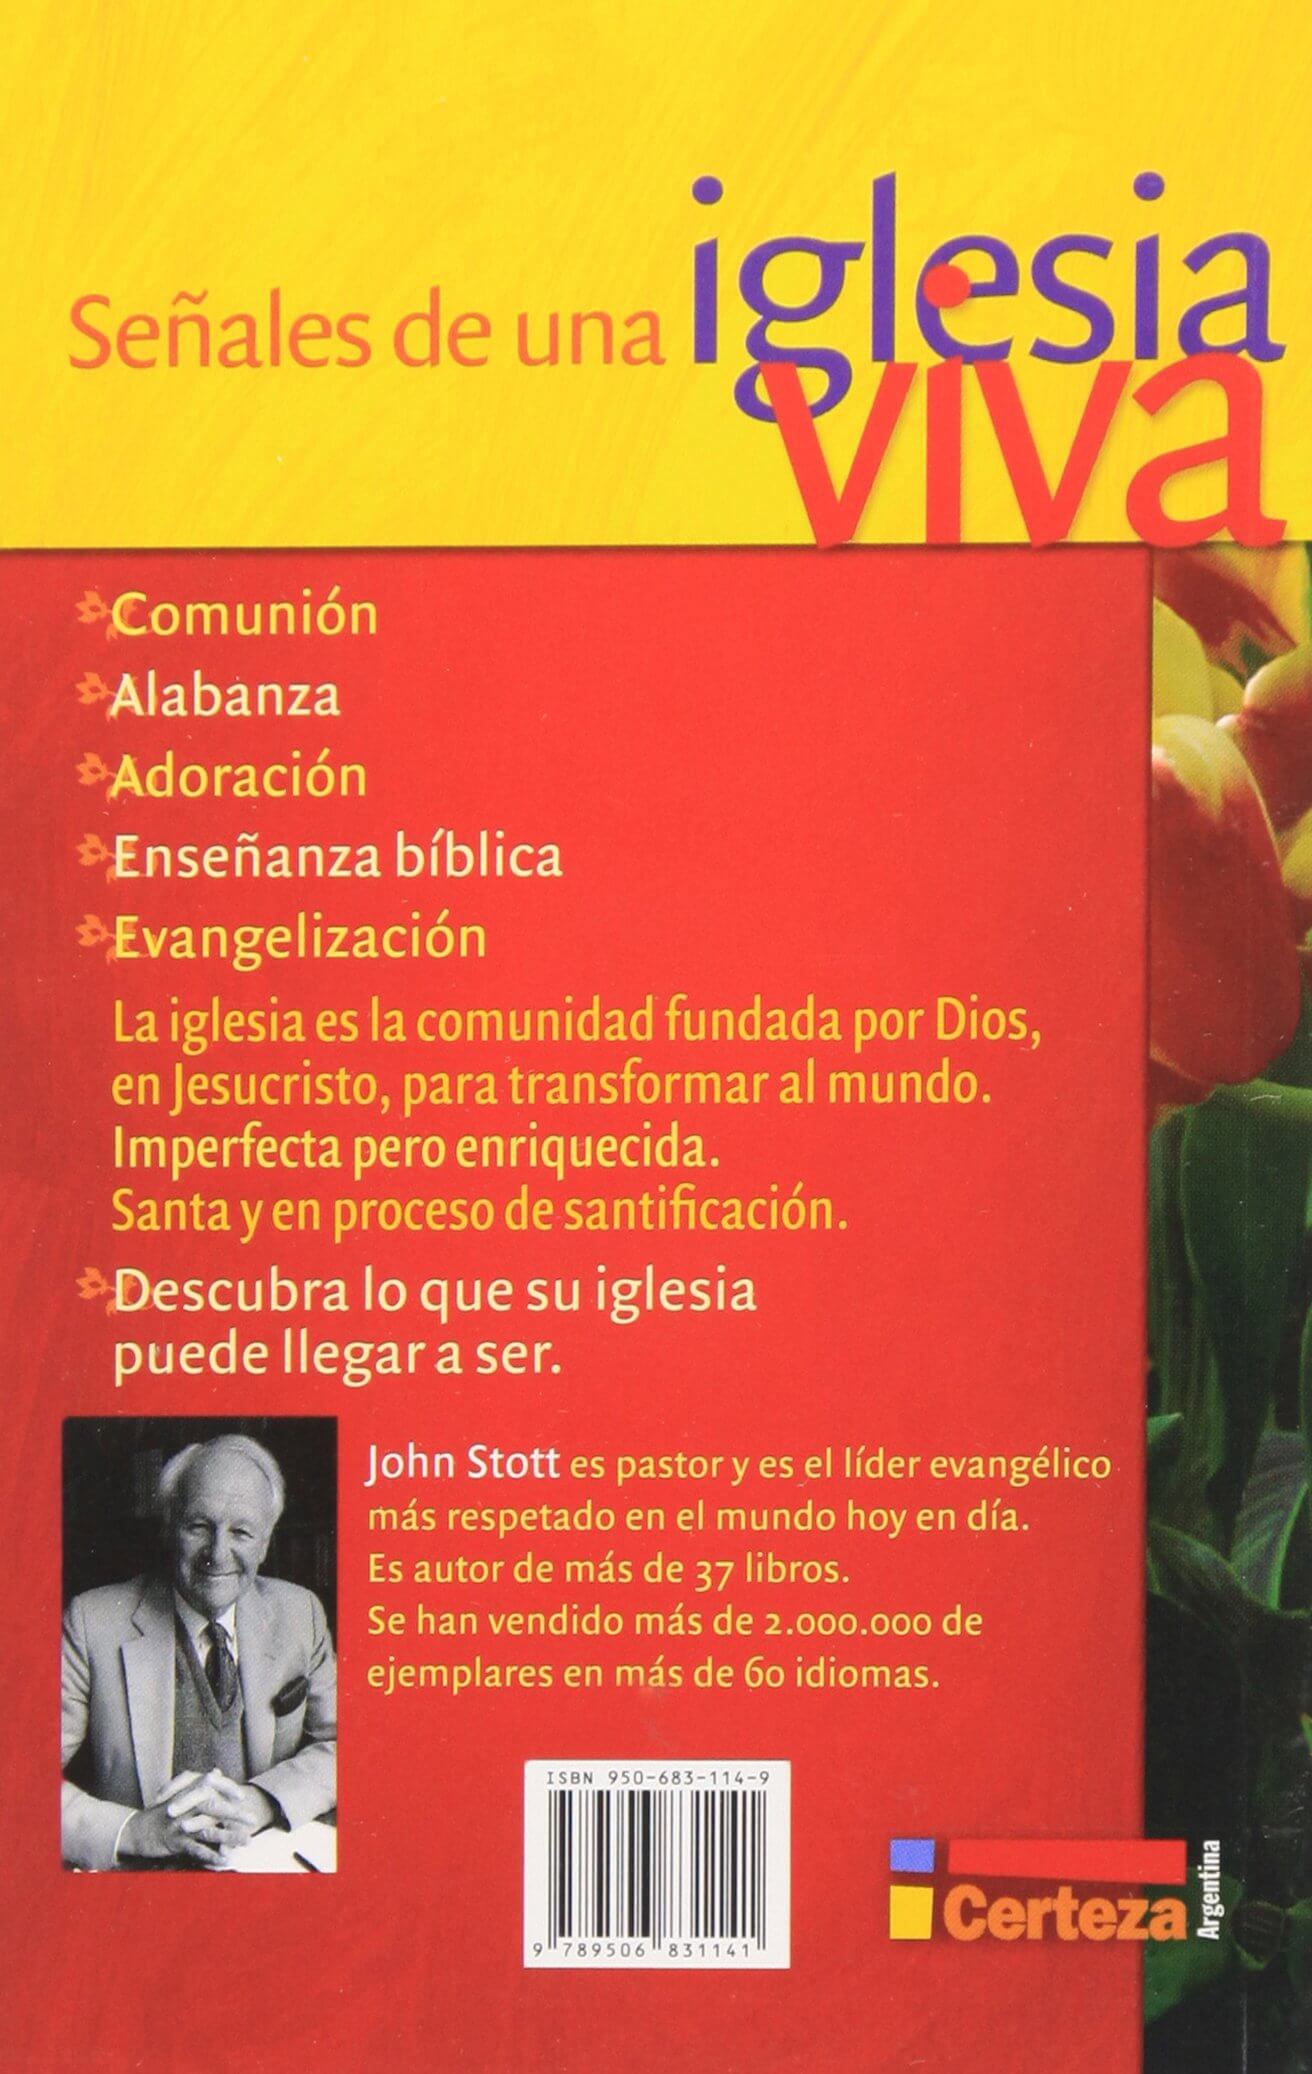 SEÑALES DE UNA IGLESIA VIVA - Desarrollo Cristiano del Perú